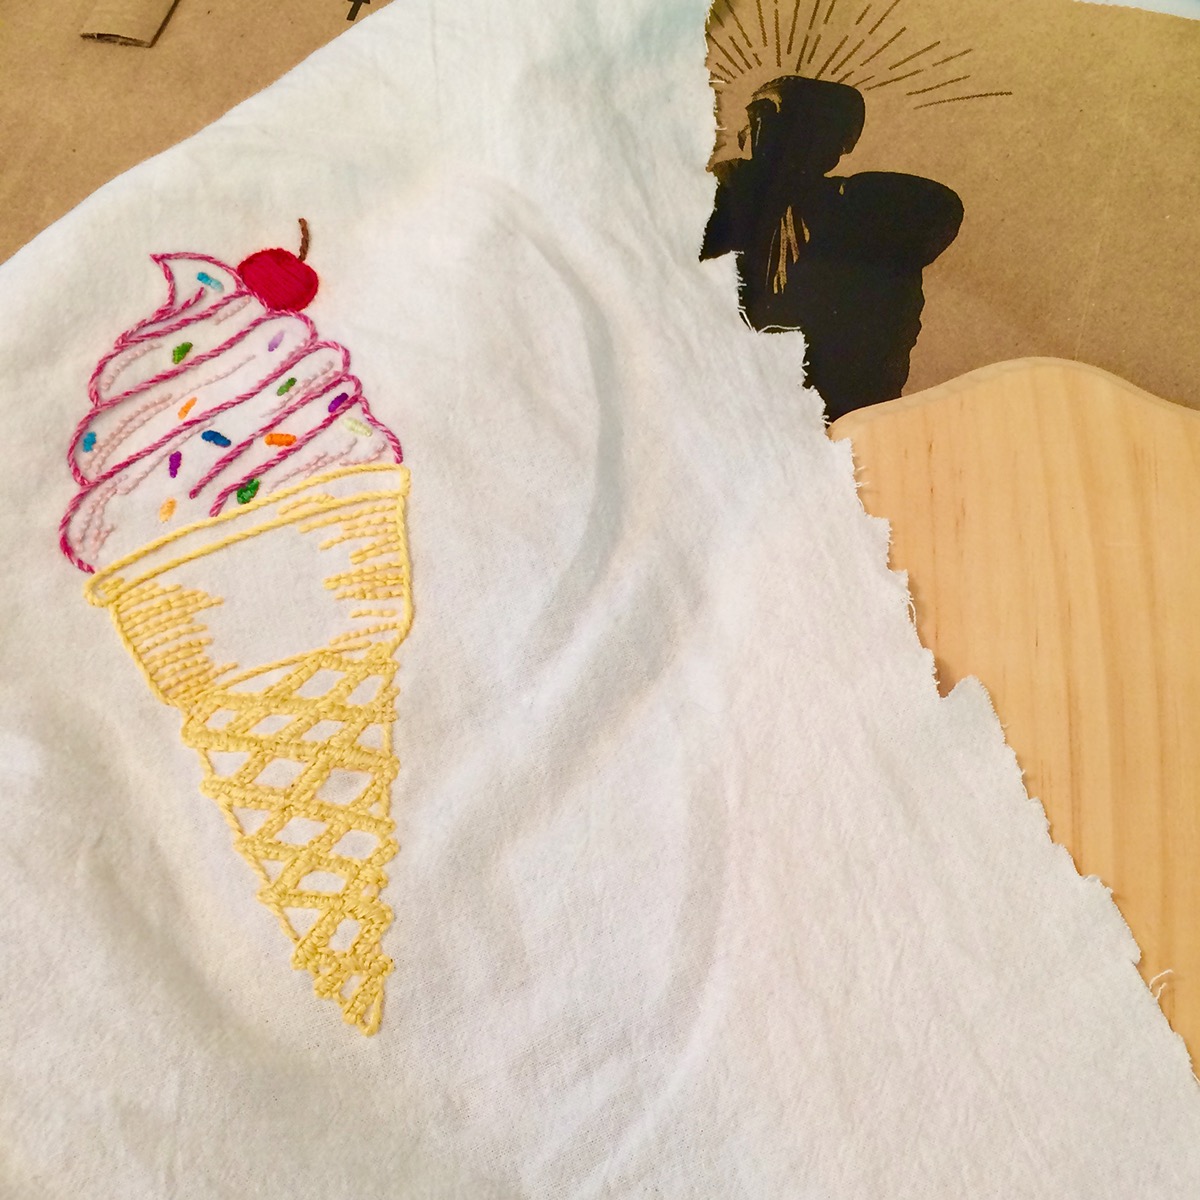 Adobe Portfolio Embroidery ice cream cone